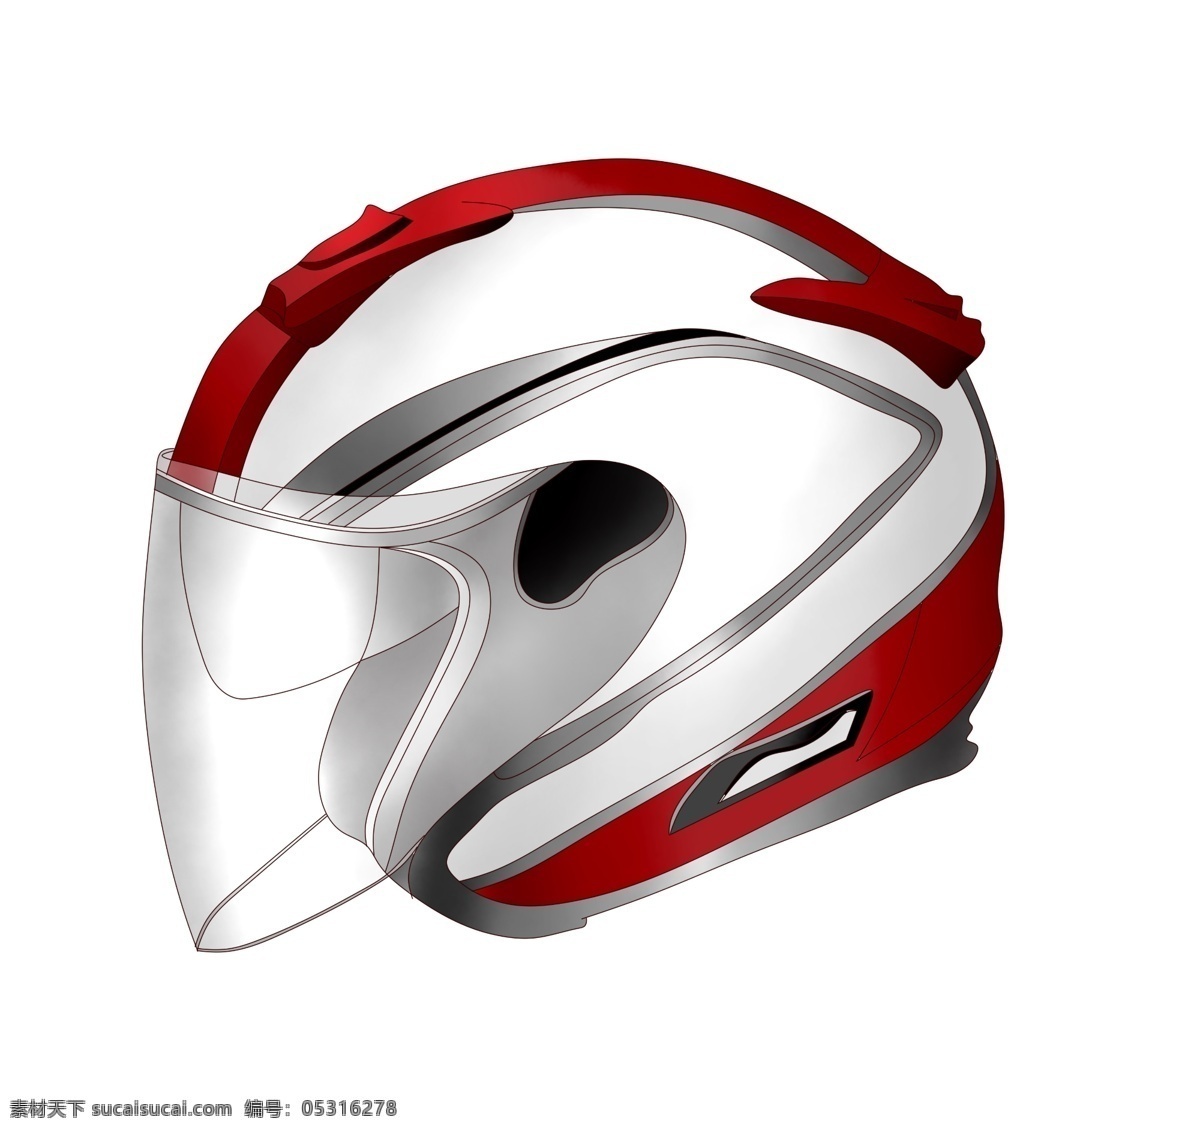 红色 赛车 头盔 插图 漂亮的头盔 图案头盔 骑行头盔 头盔插画 时尚的头盔 设计头盔 红色头盔 装饰卡通